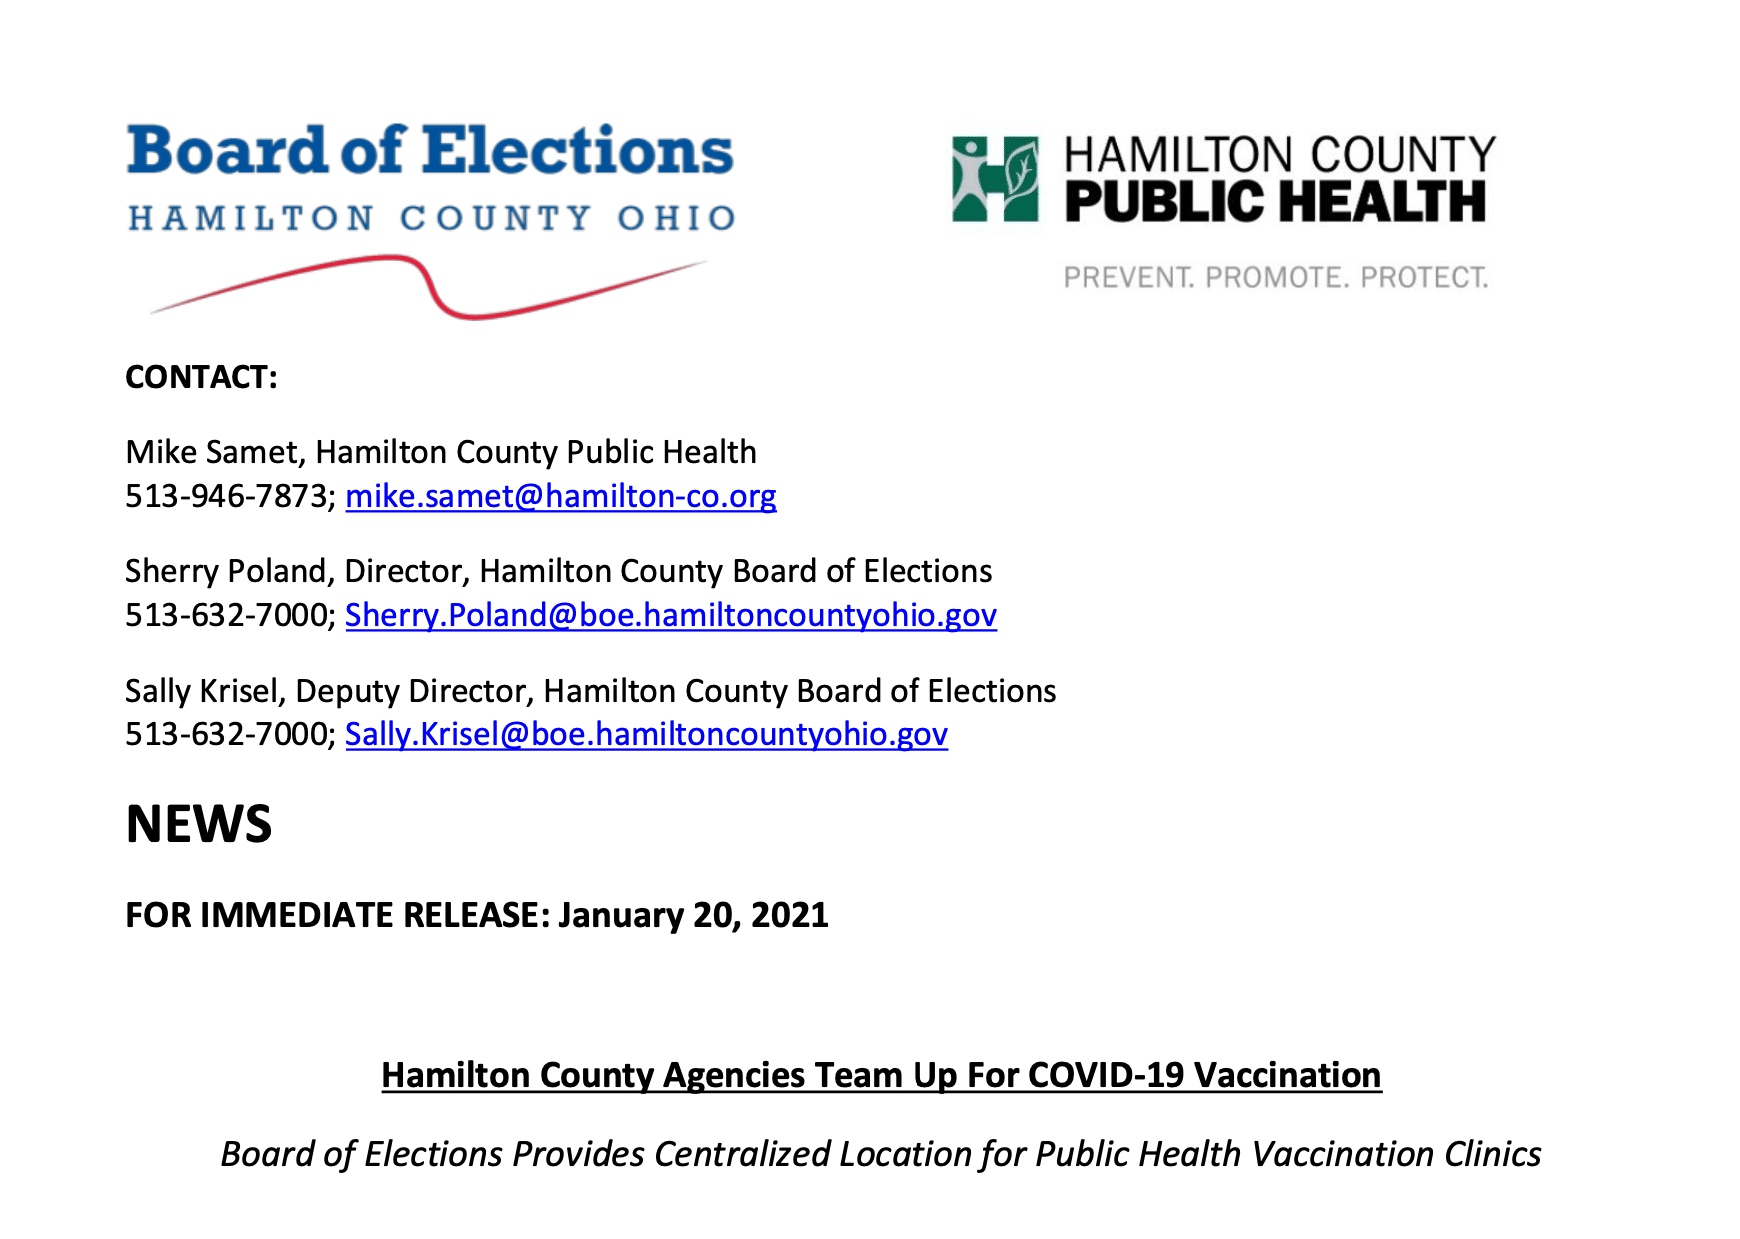 Hamilton County Boe Provides Centralized Location For Covid Vaccination Clinics The Health Collaborative